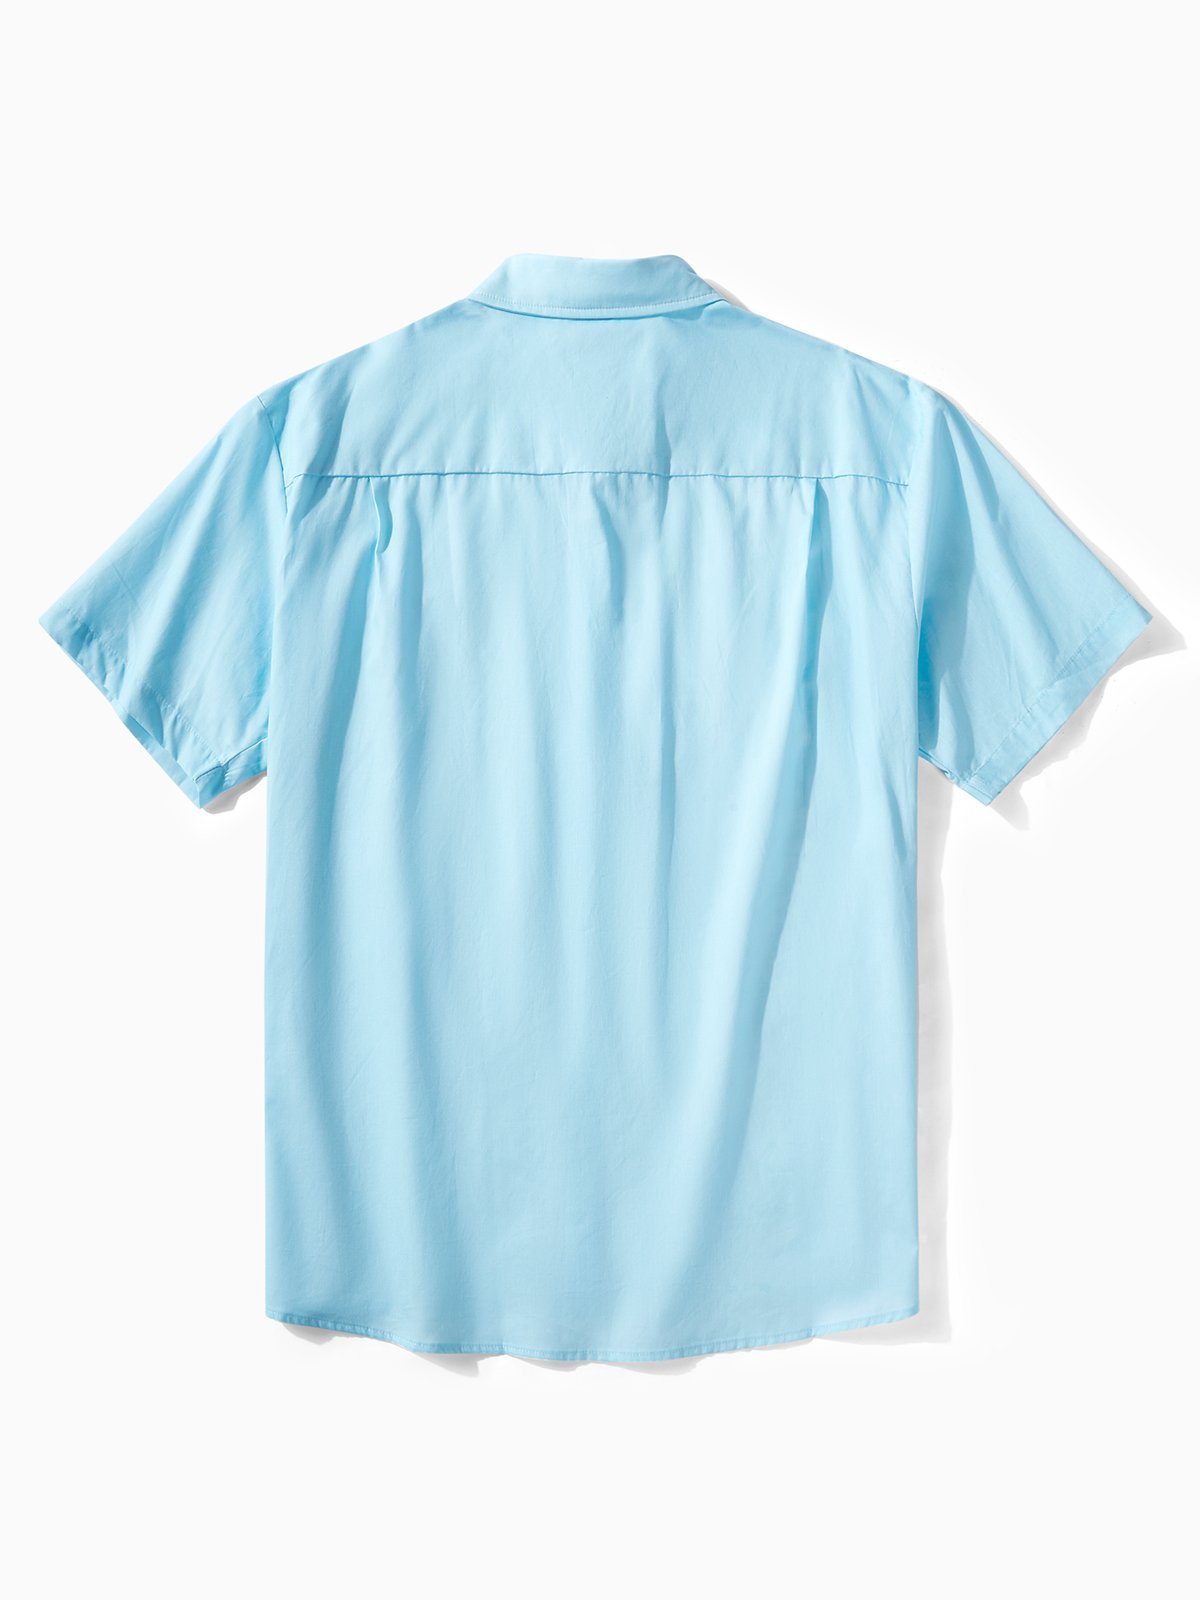 Hardaddy® Cotton Monstera Deliciosa Guayabera Shirt